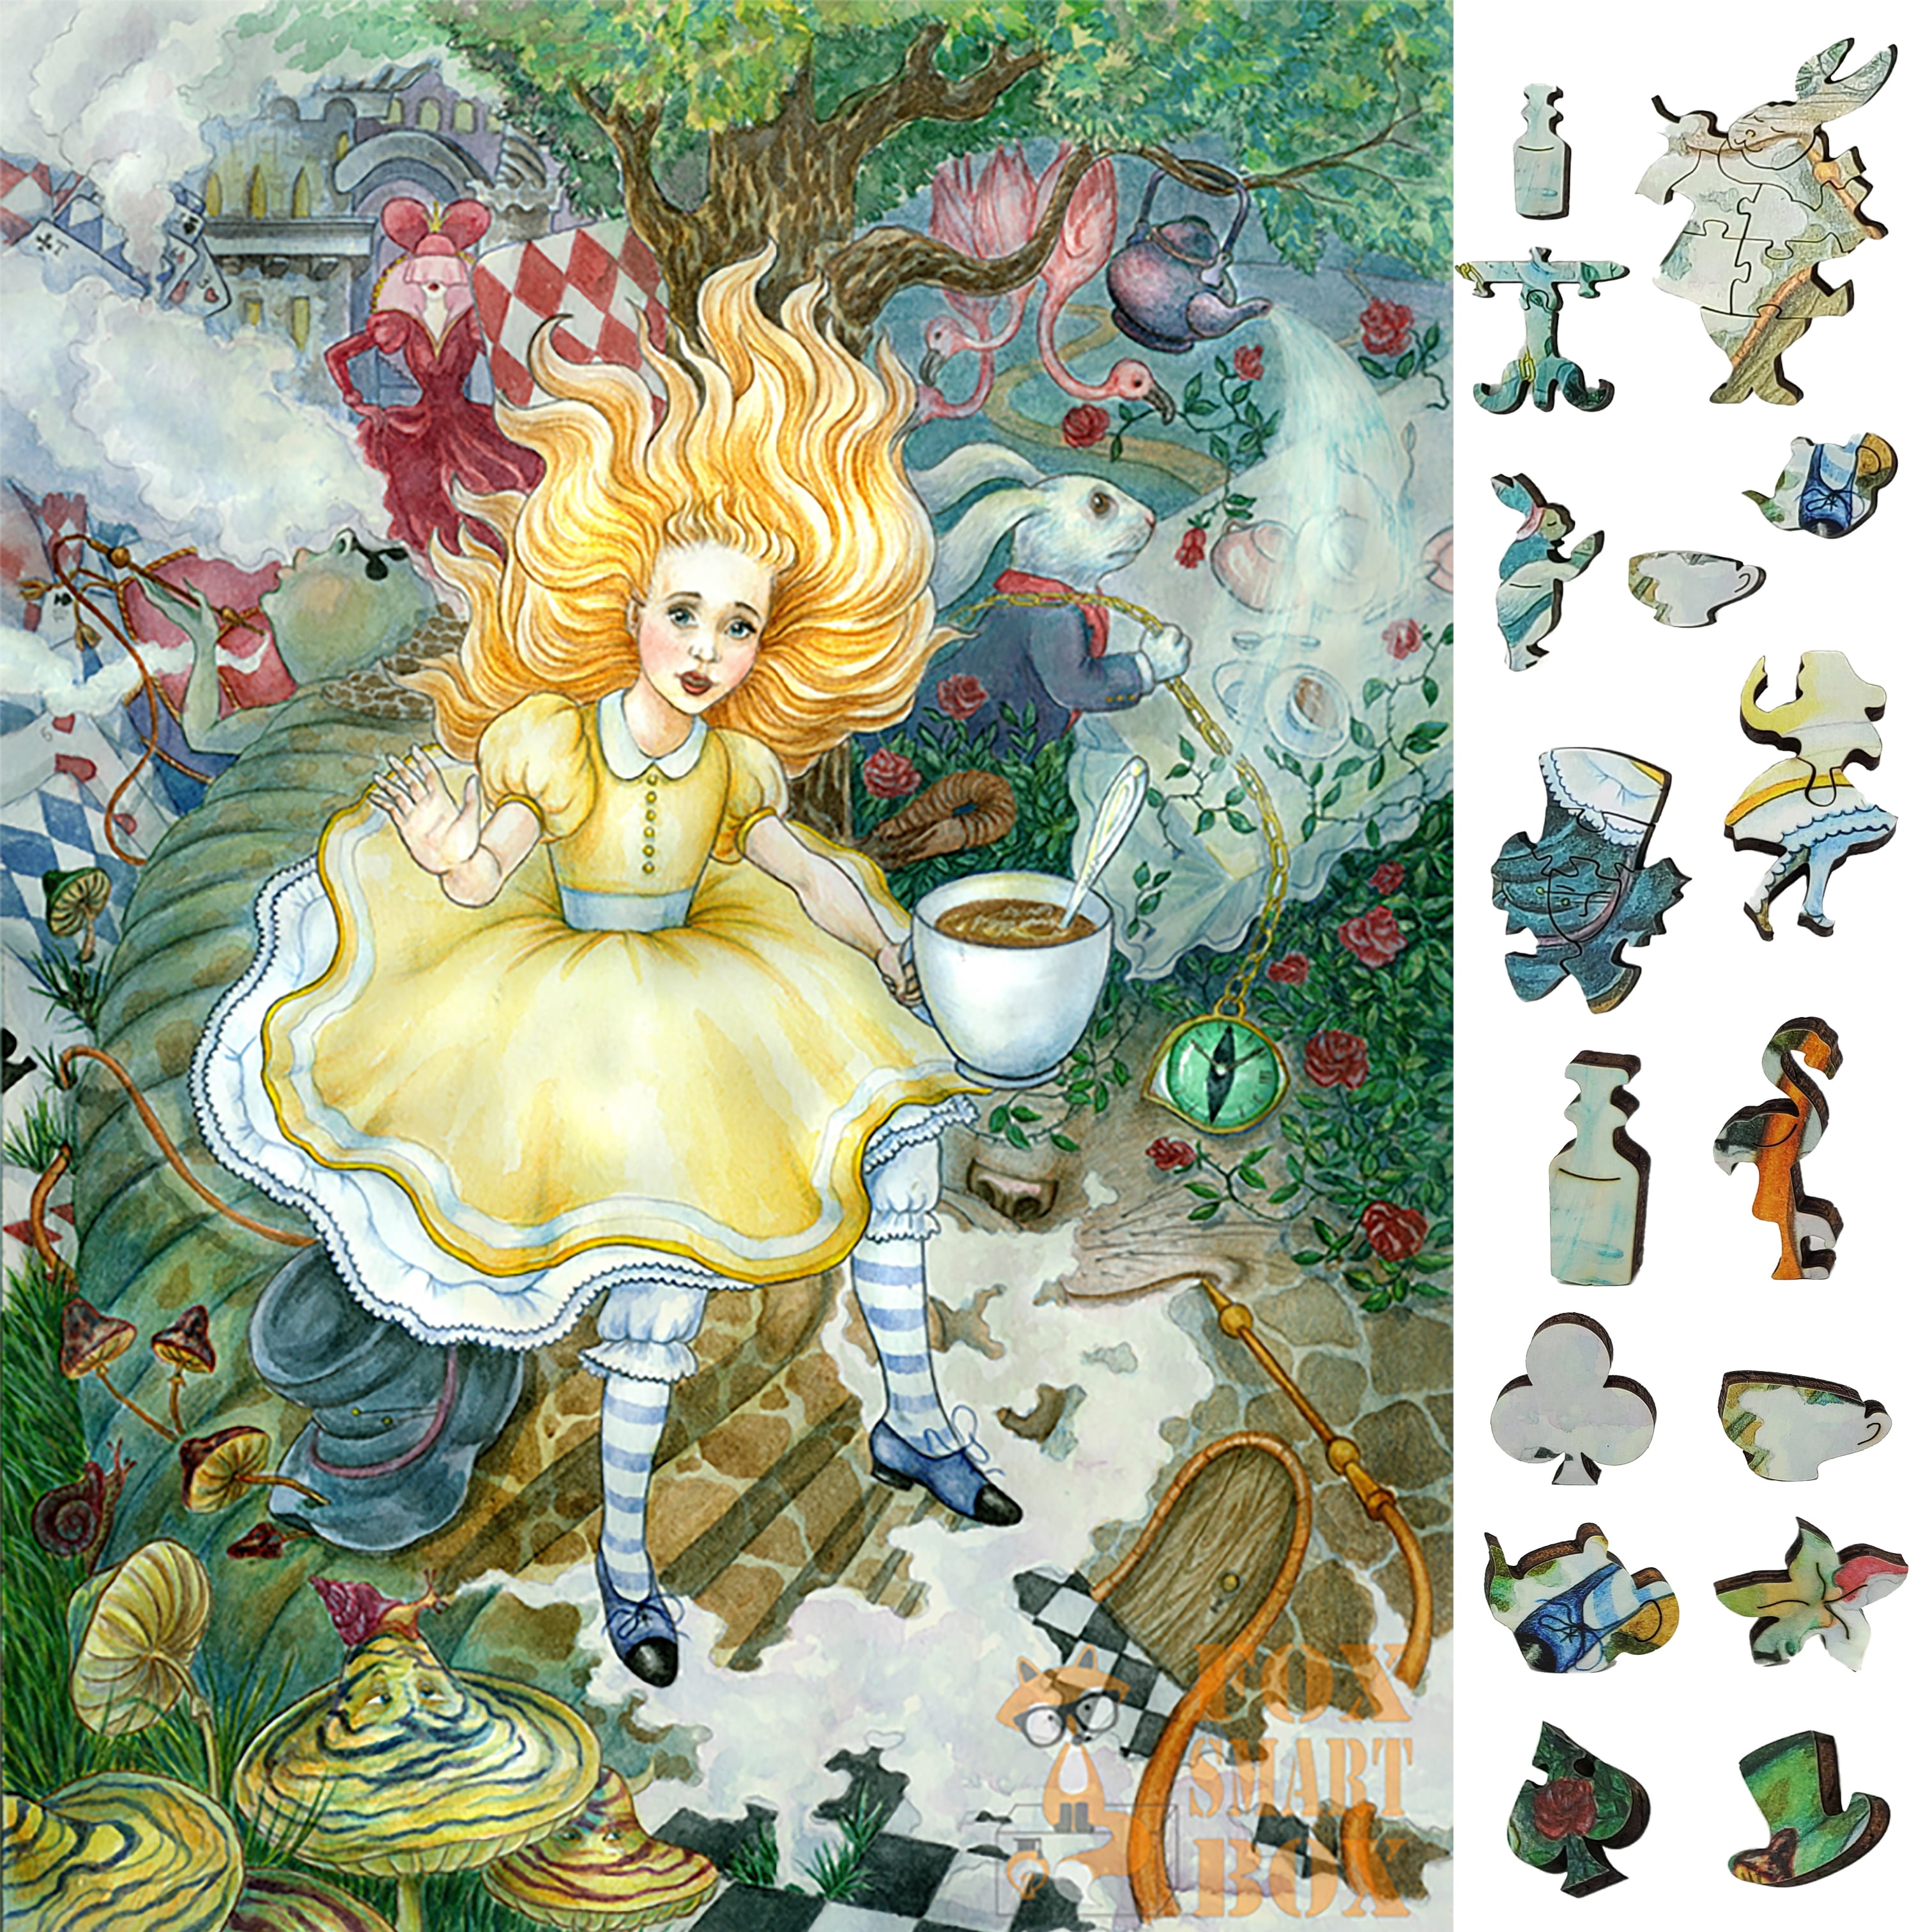 Сказка творчества. Иллюстрации к сказке Алиса в Зазеркалье. Алиса в Зазеркалье акварель. Иллюстрация к сказке Алиса в стране чудес. Алиса в стране чудес сказка.